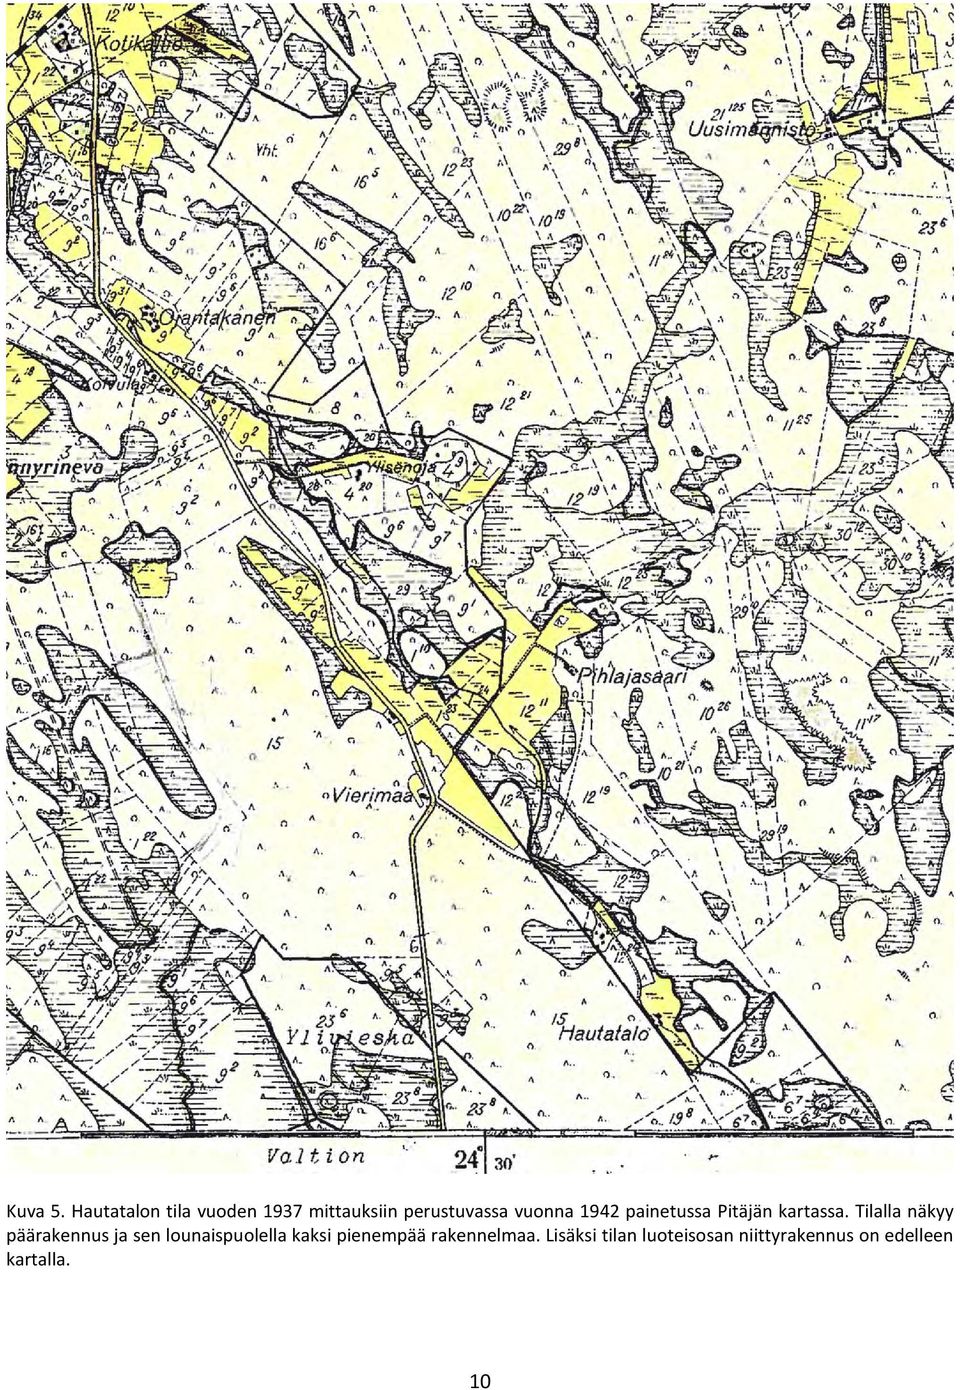 1942 painetussa Pitäjän kartassa.